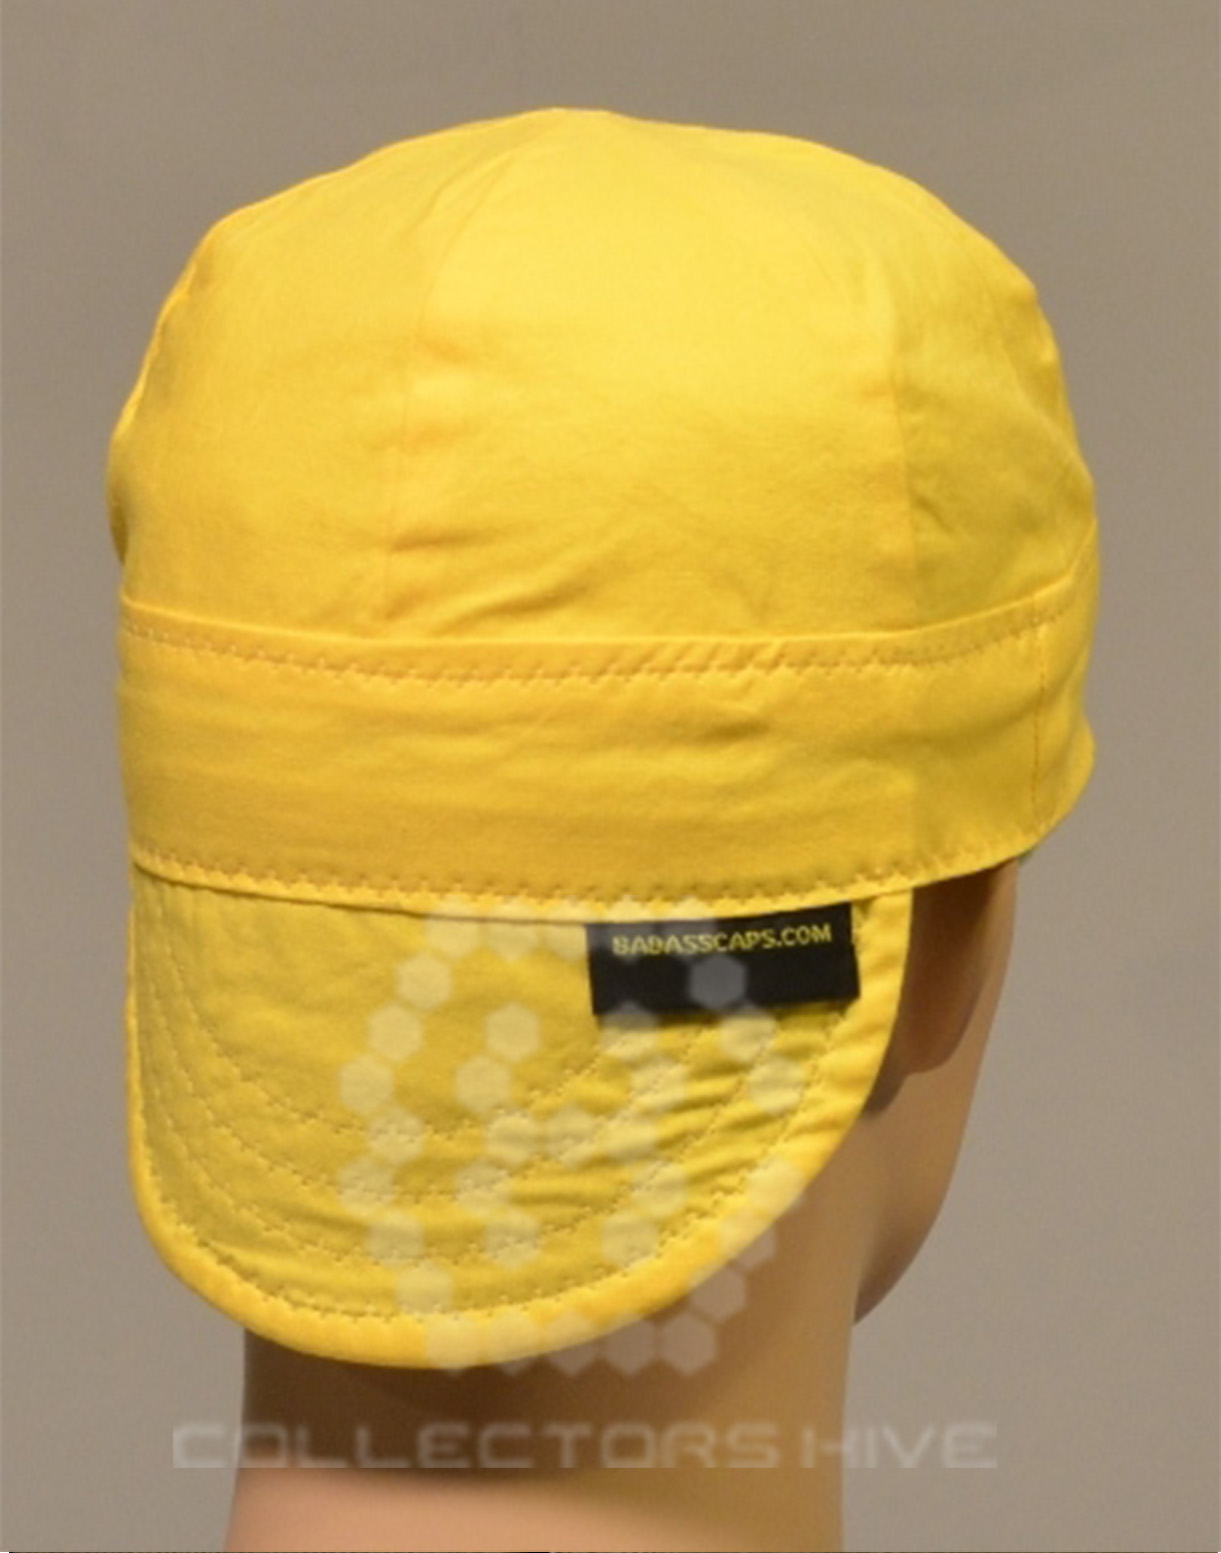 Welder's cap